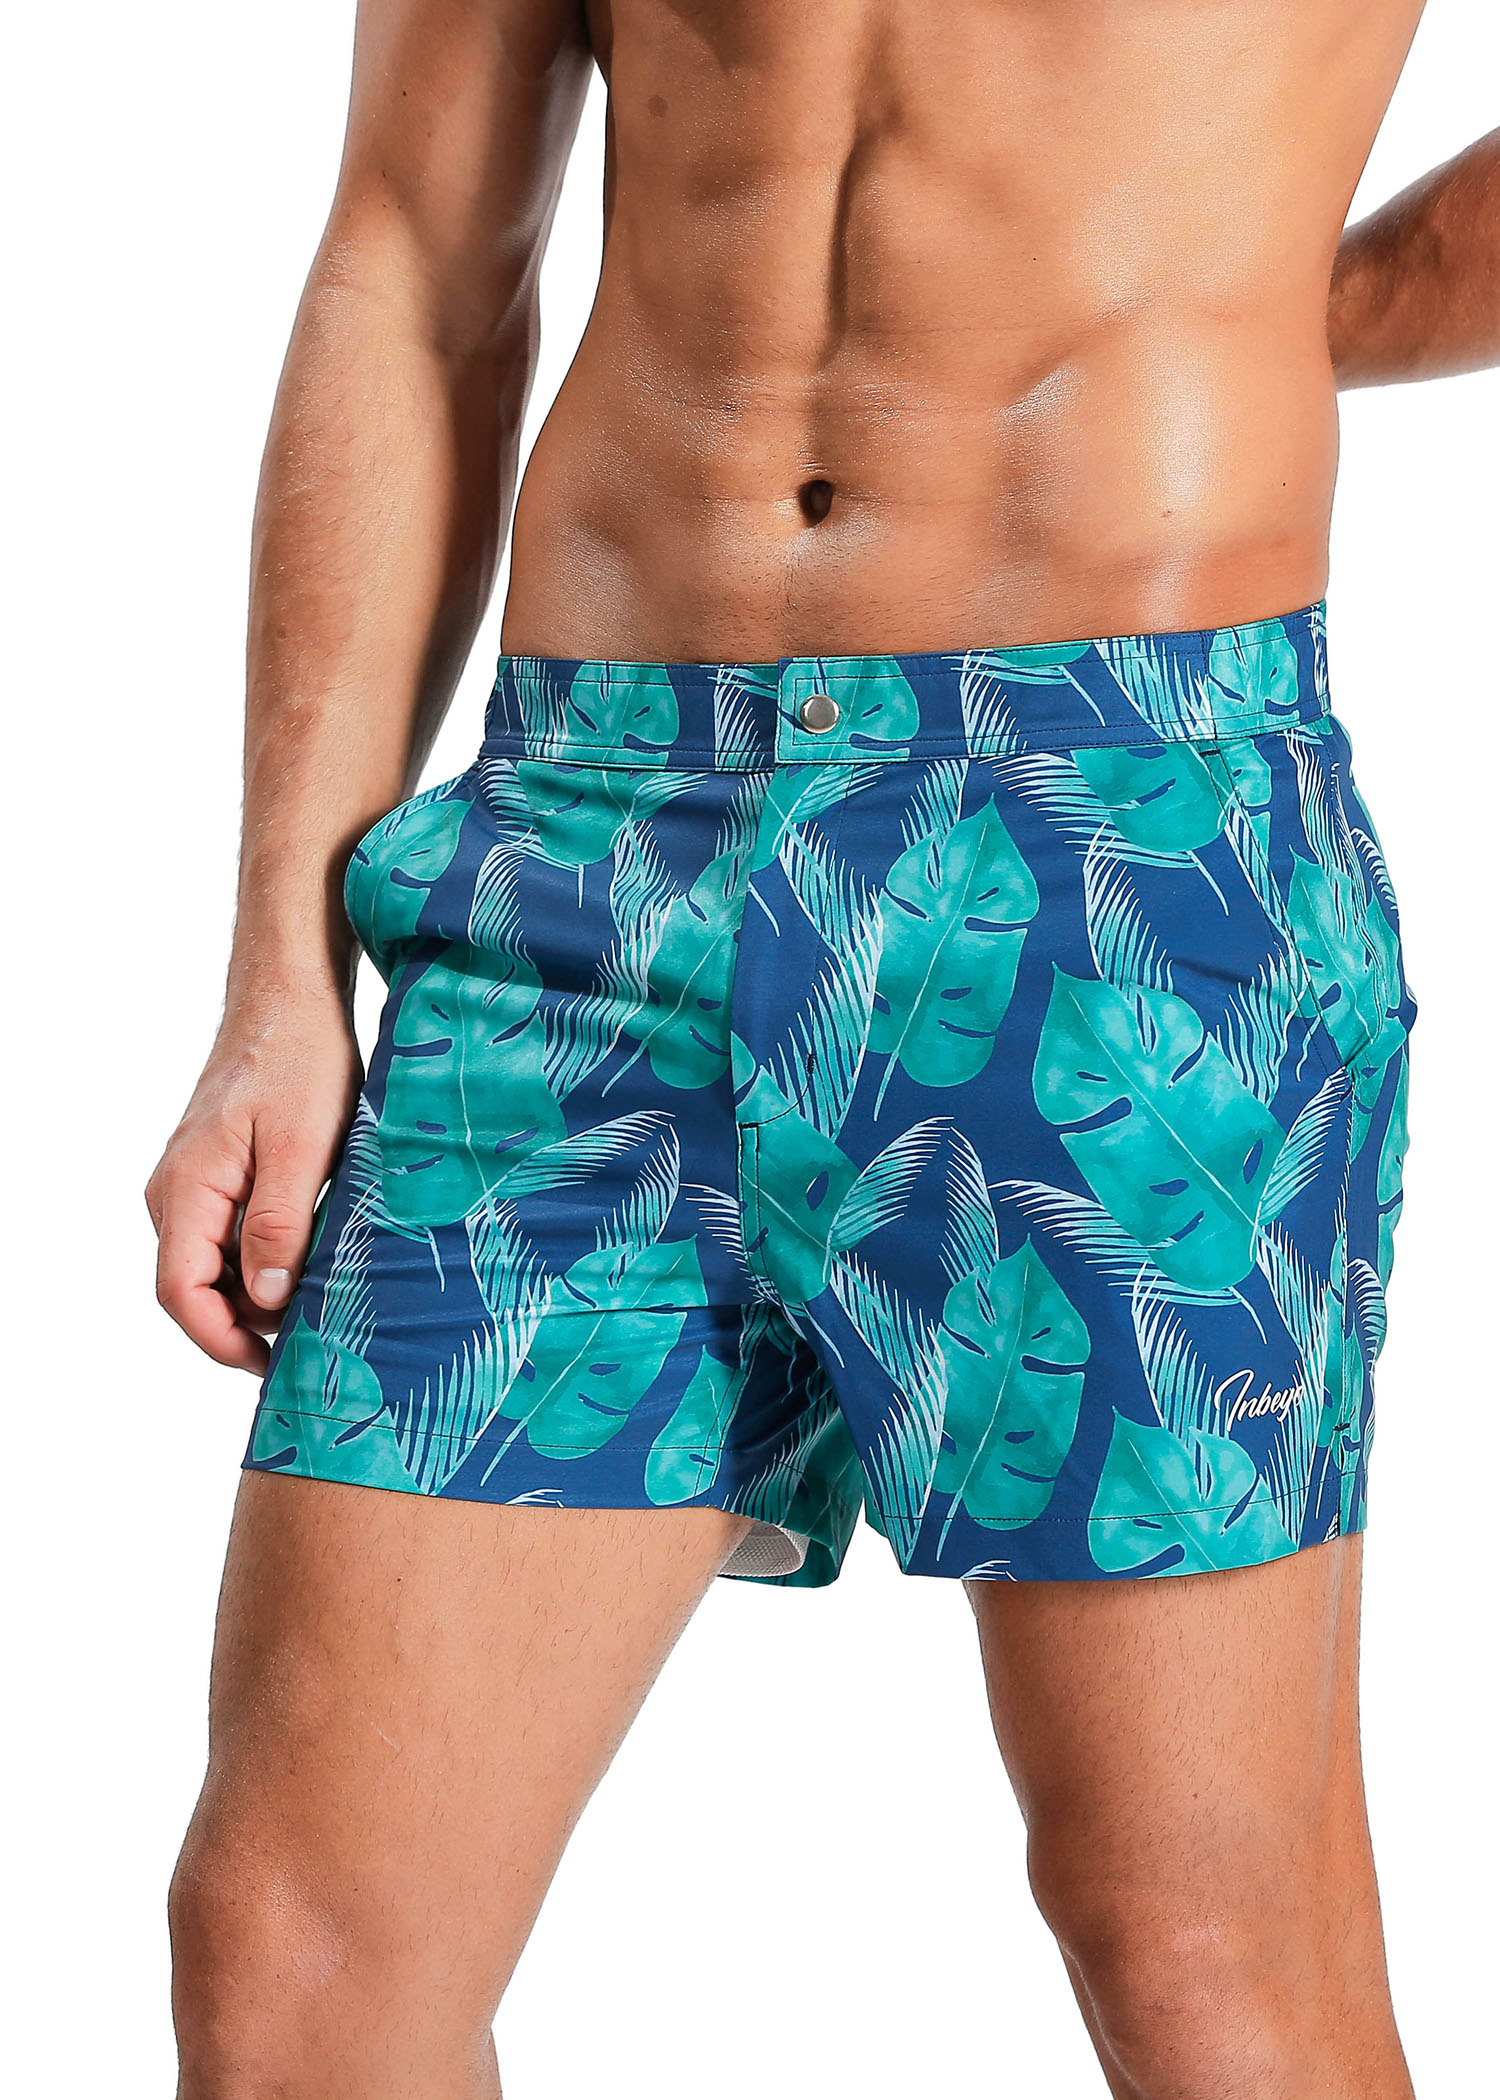 Tropical palm leaf swim shorts – www.inbeyo.com